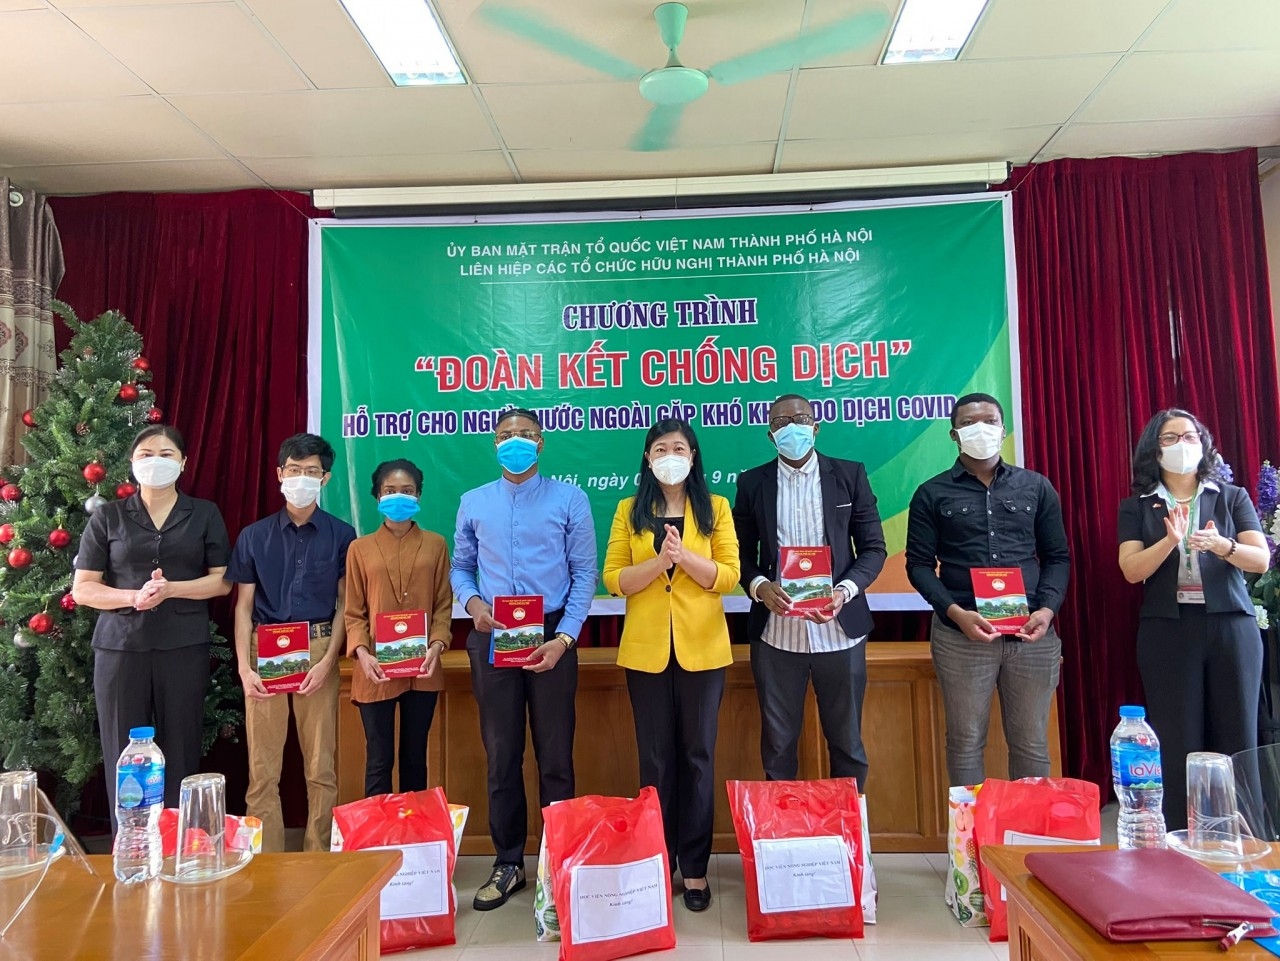 河内市越南祖国阵线委员会主席阮兰香向受疫情影响的越南农业学院外国学生送慰问礼